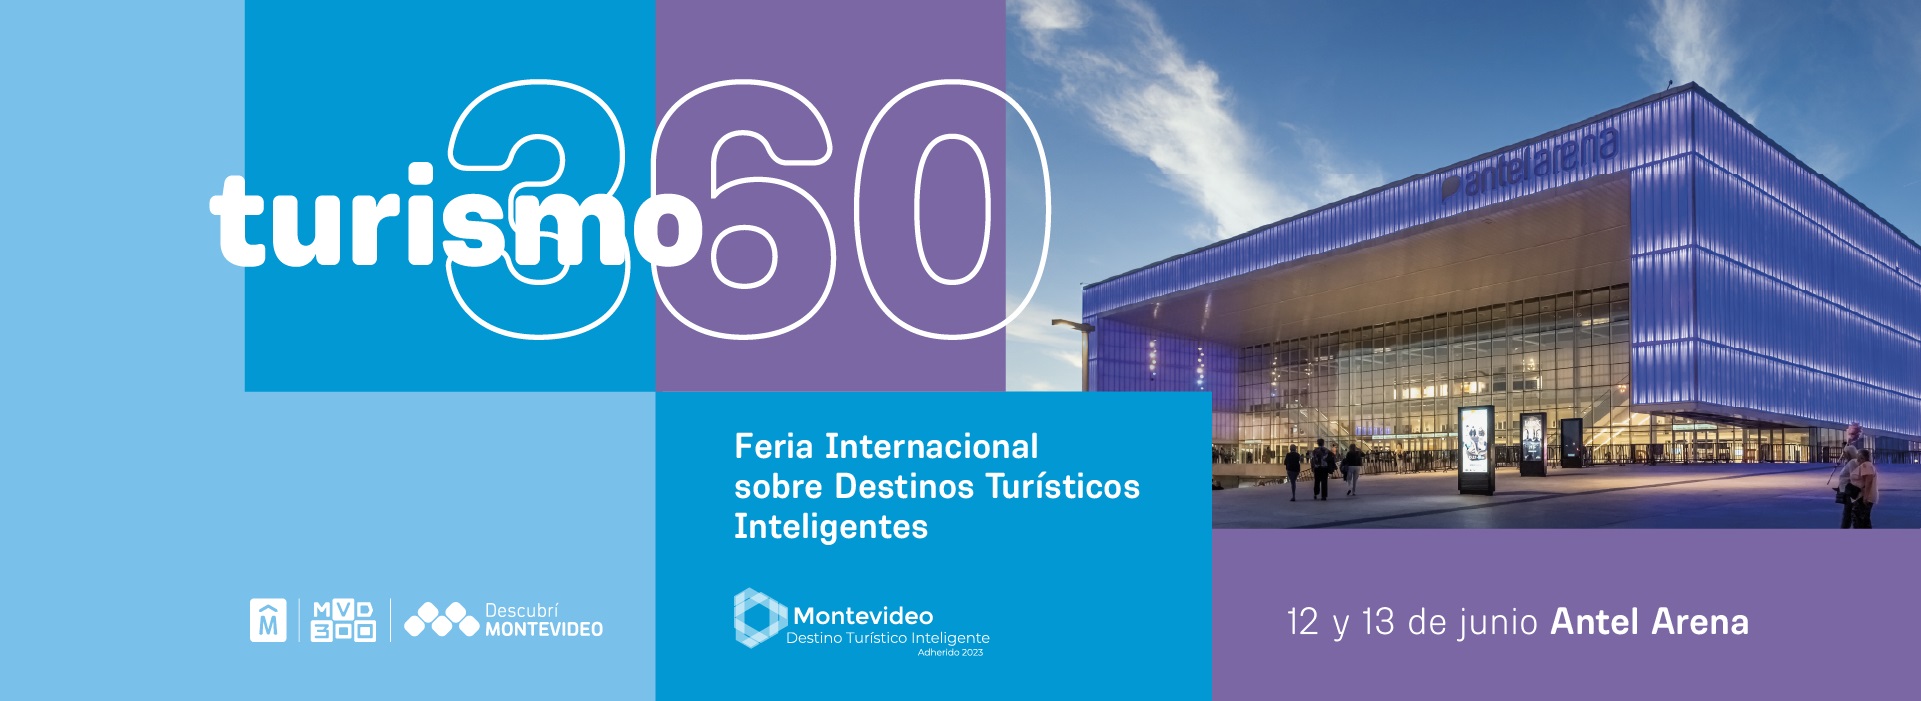 Canelones participará en Turismo 360 - Feria Internacional sobre Destinos Turísticos Inteligentes